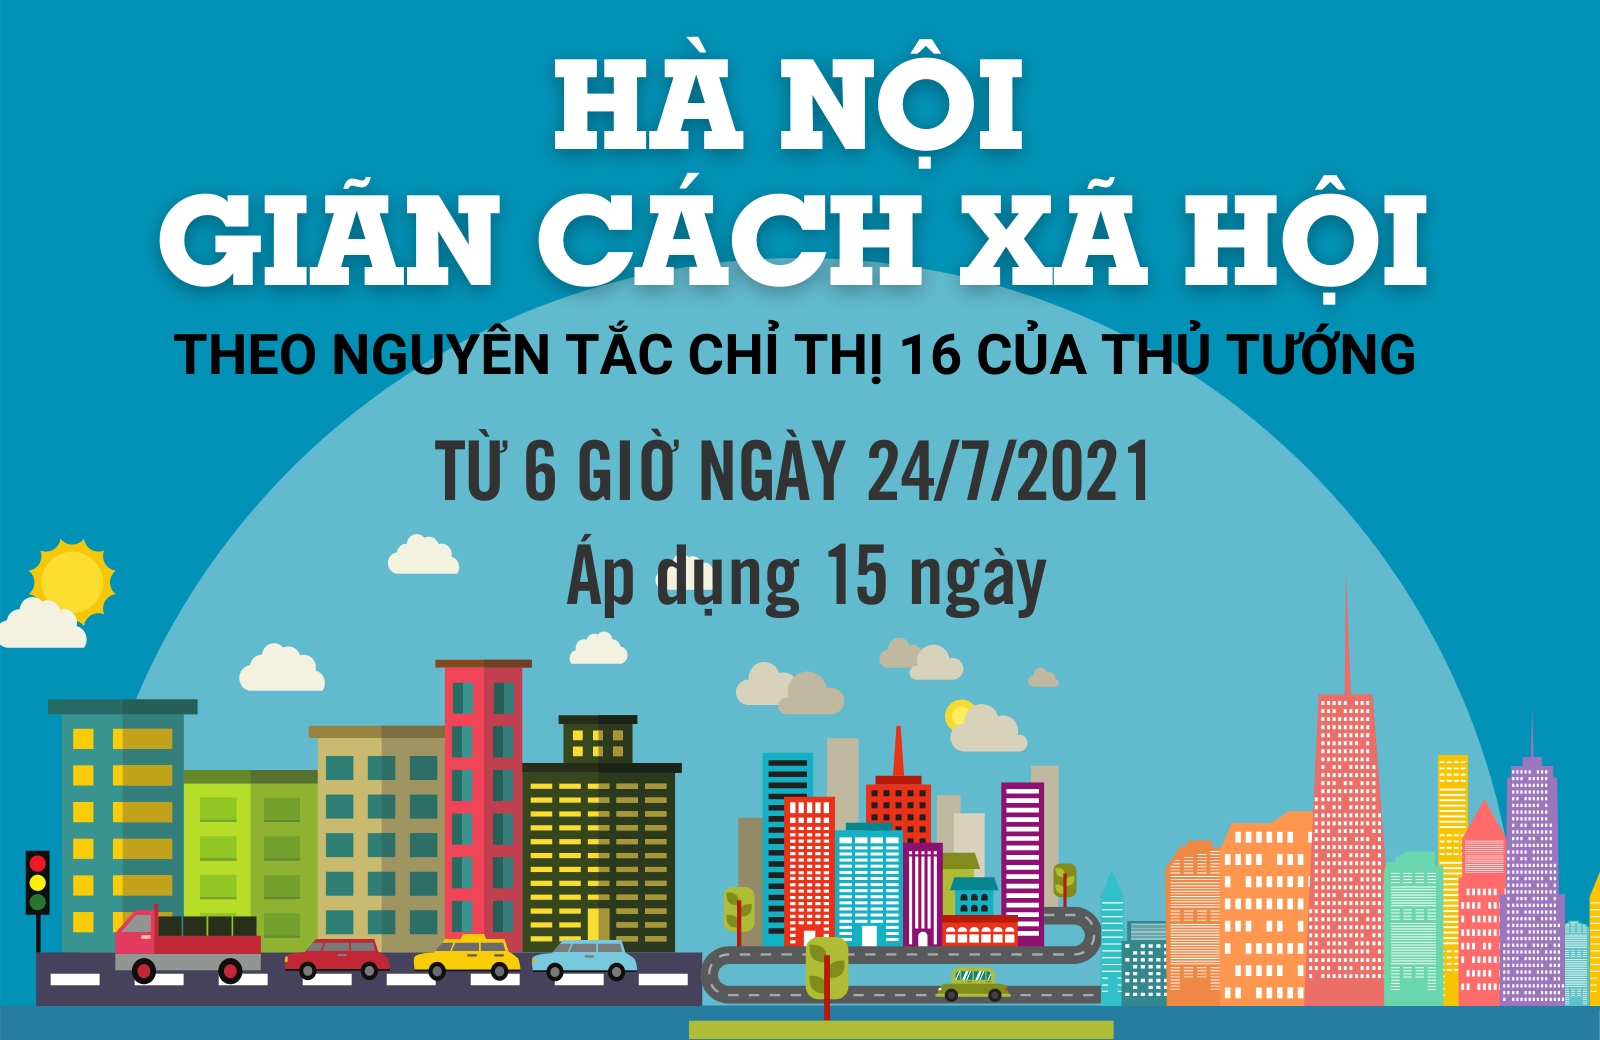 [Infographic] Một số quy định về thực hiện 15 ngày giãn cách xã hội trên địa bàn thành phố Hà Nội